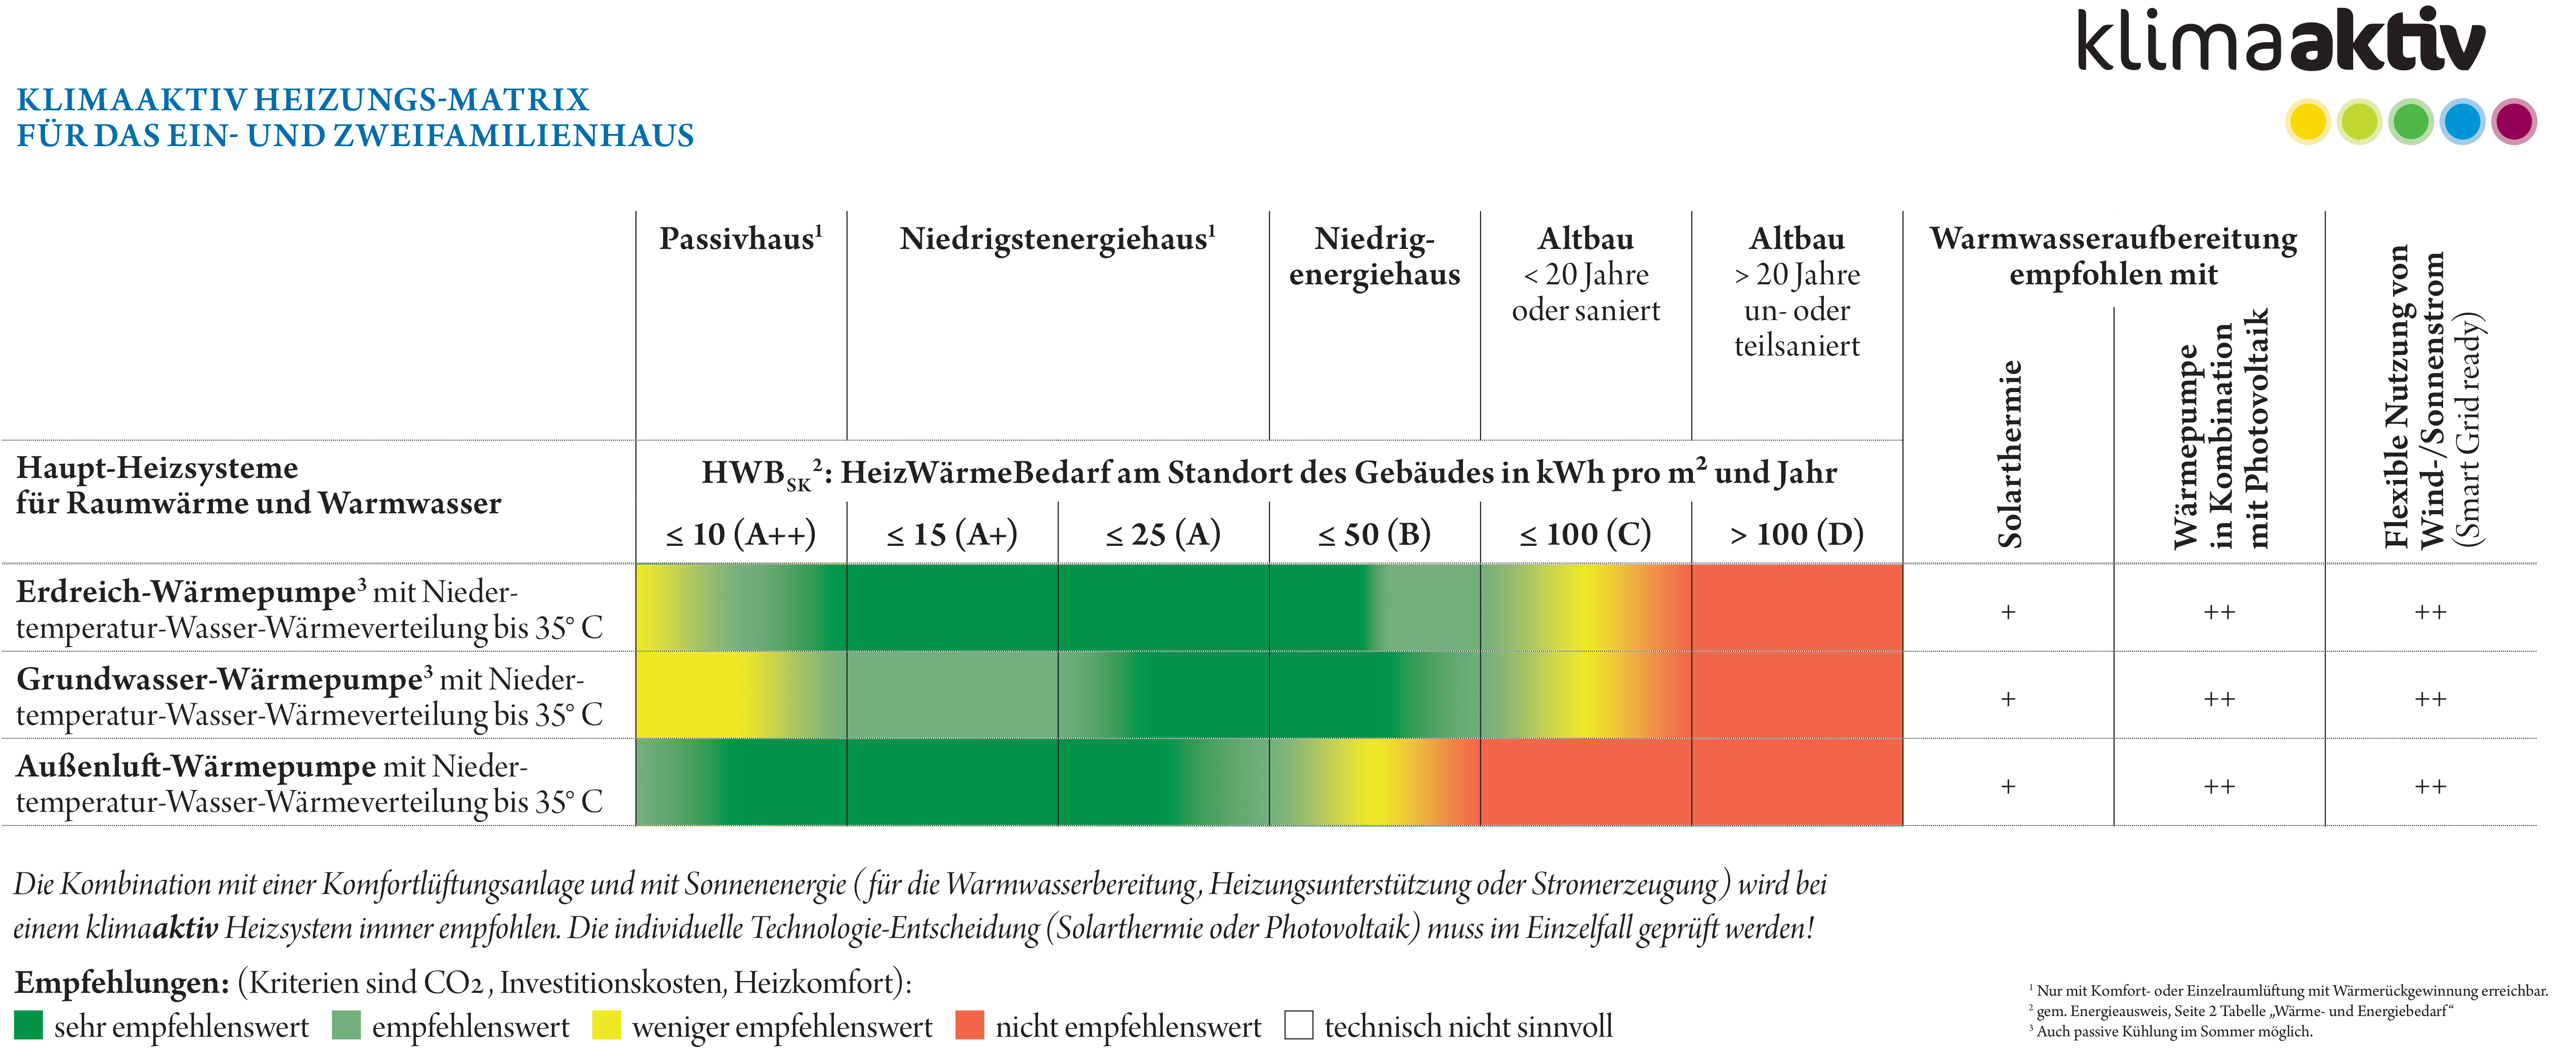 Die klimaaktiv Heizungsmatrix zeigt wie empfehlenswert Heizsysteme für verschiedene Haustypen wie Passivhaus, Niedrigenergiehaus oder Altbau sind